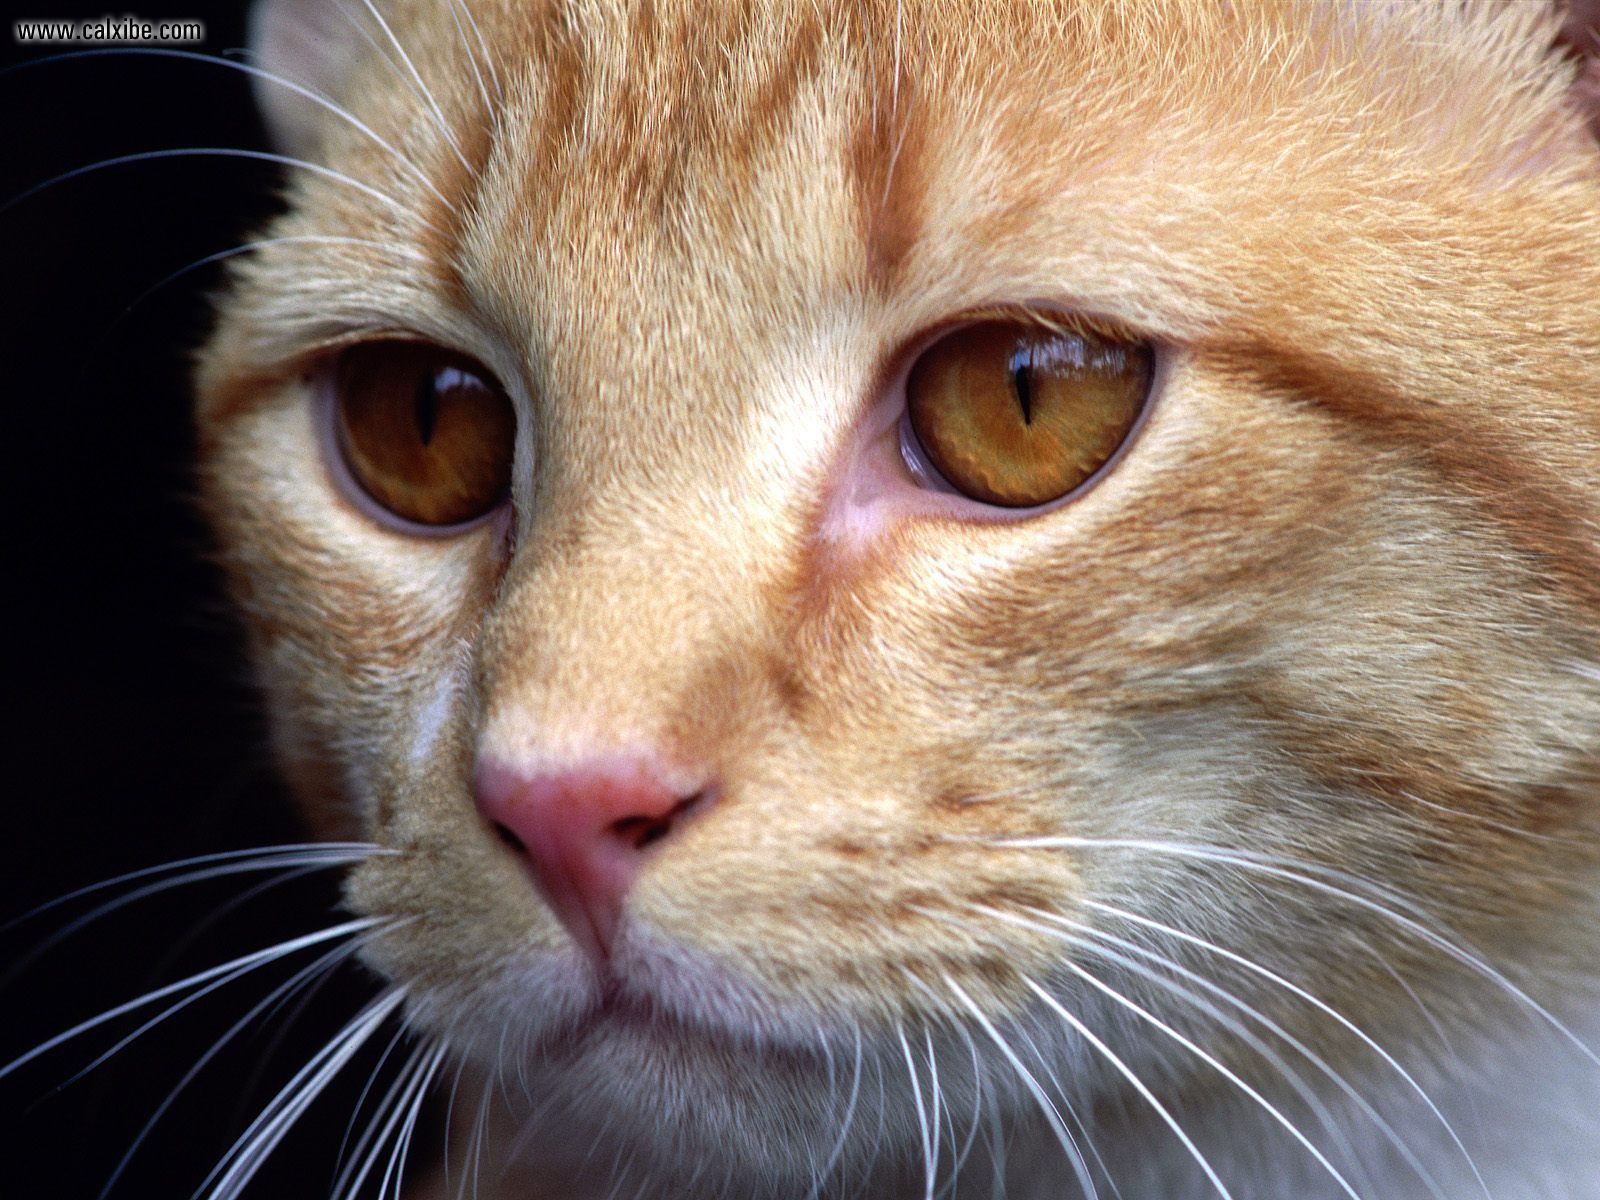 Animals: Cat Closeup, picture nr. 14259